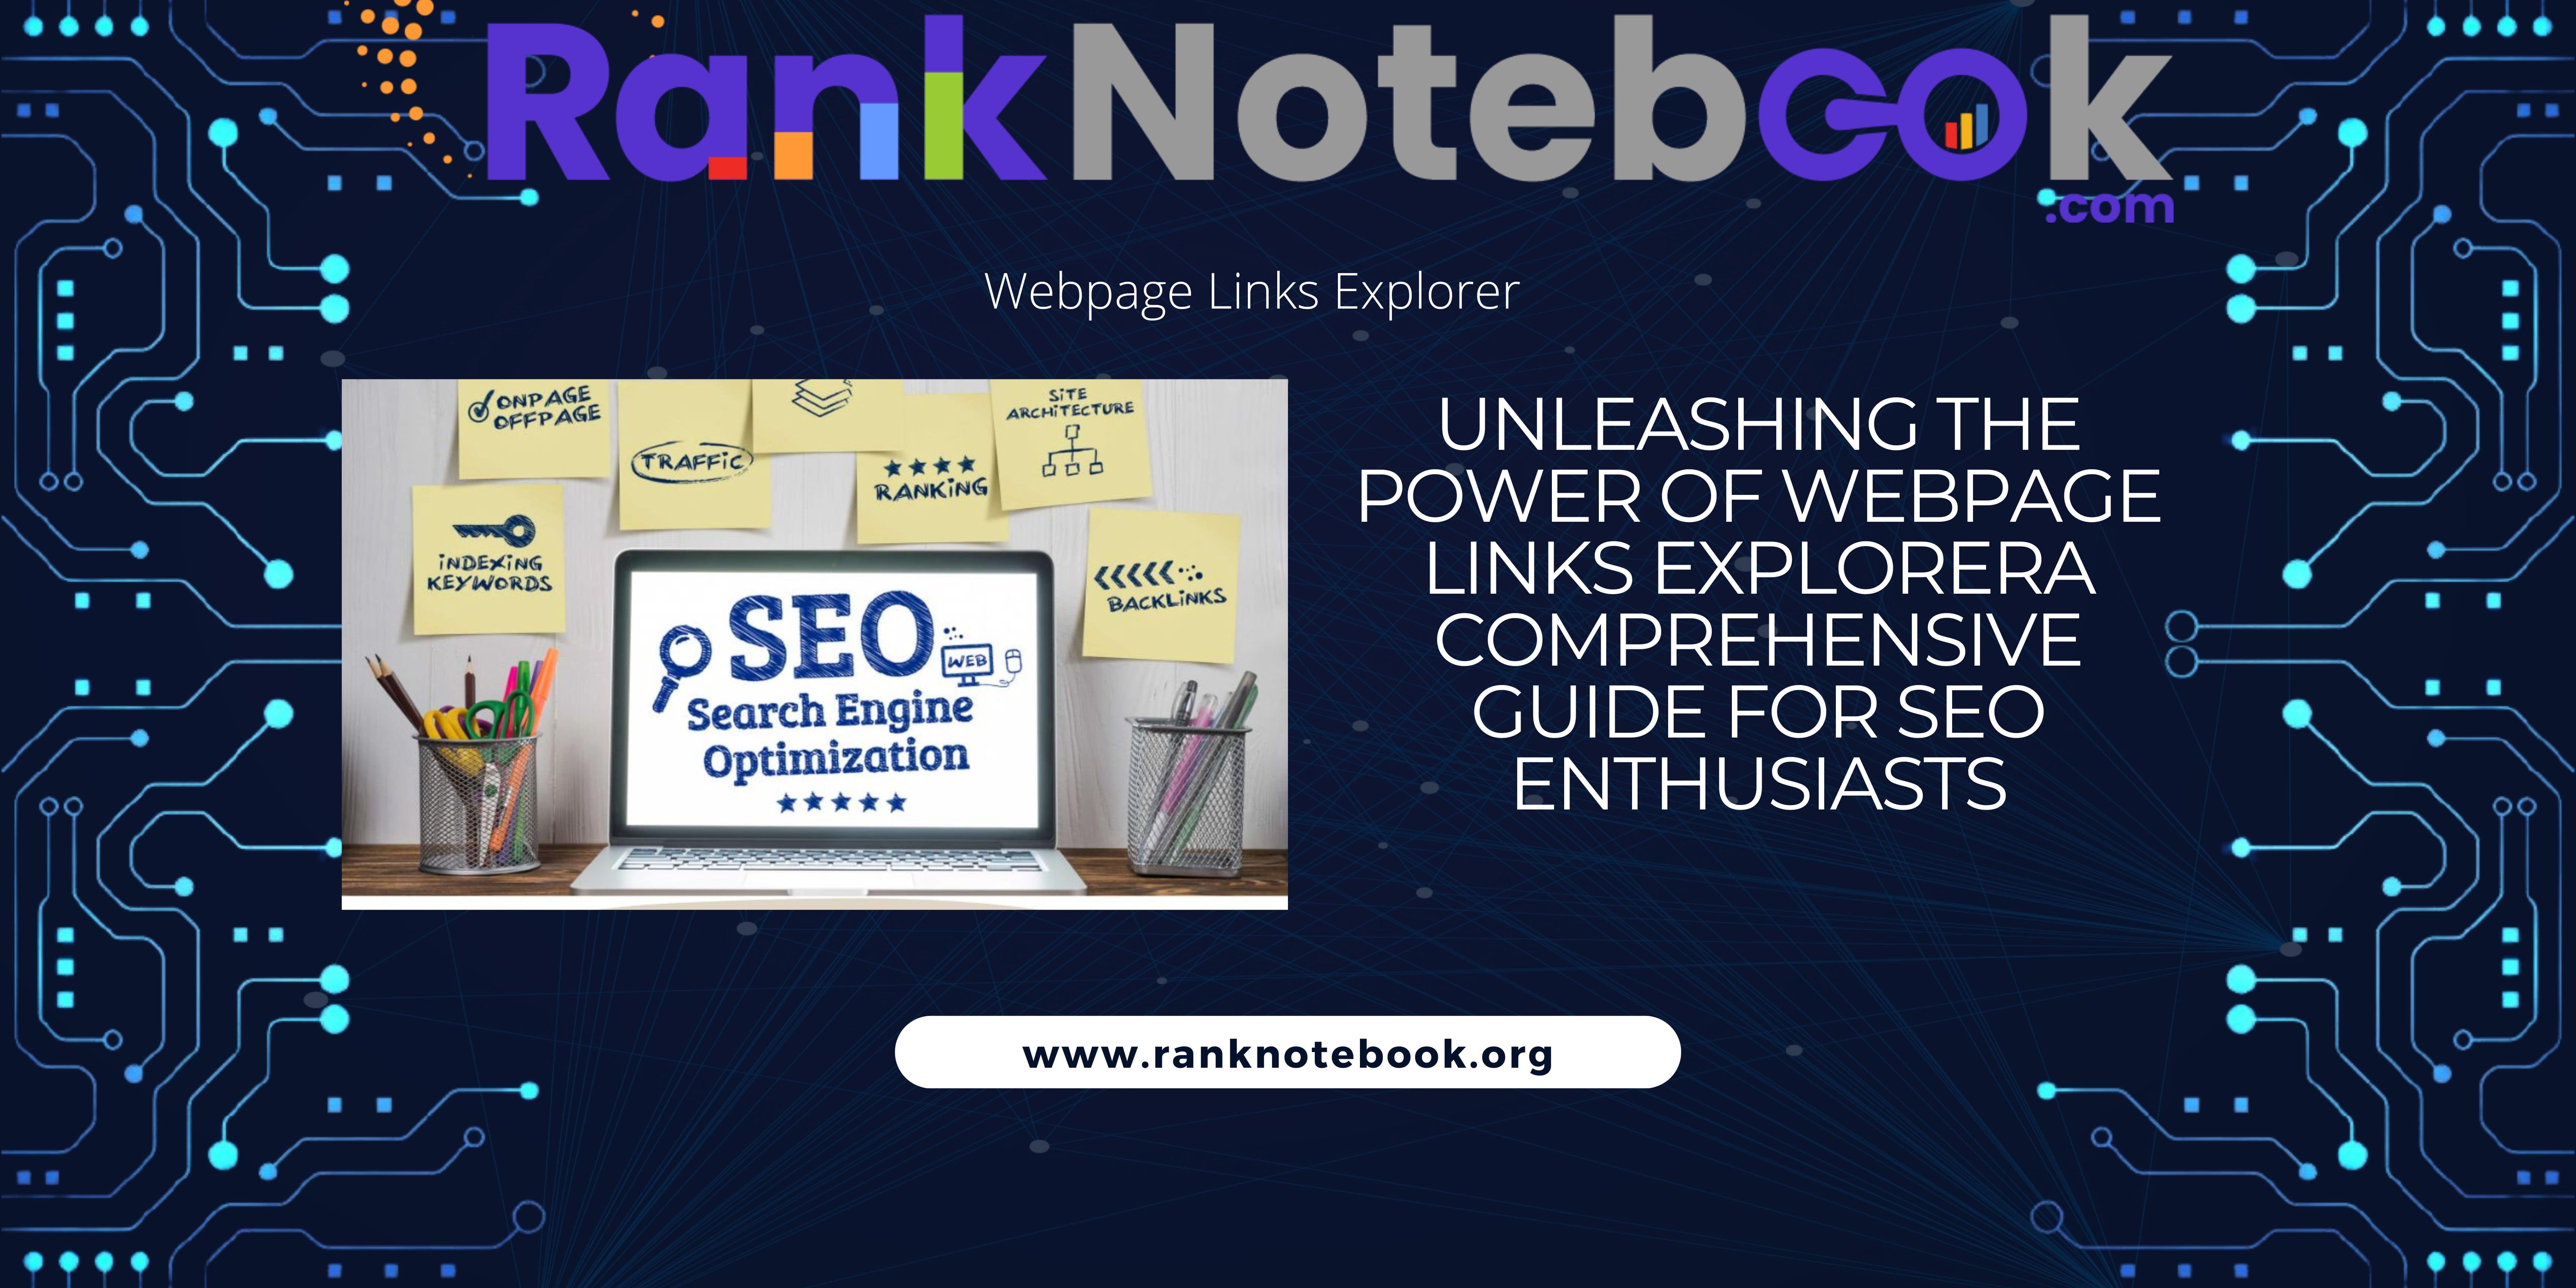 Webpage Links Explorer on ranknotebook